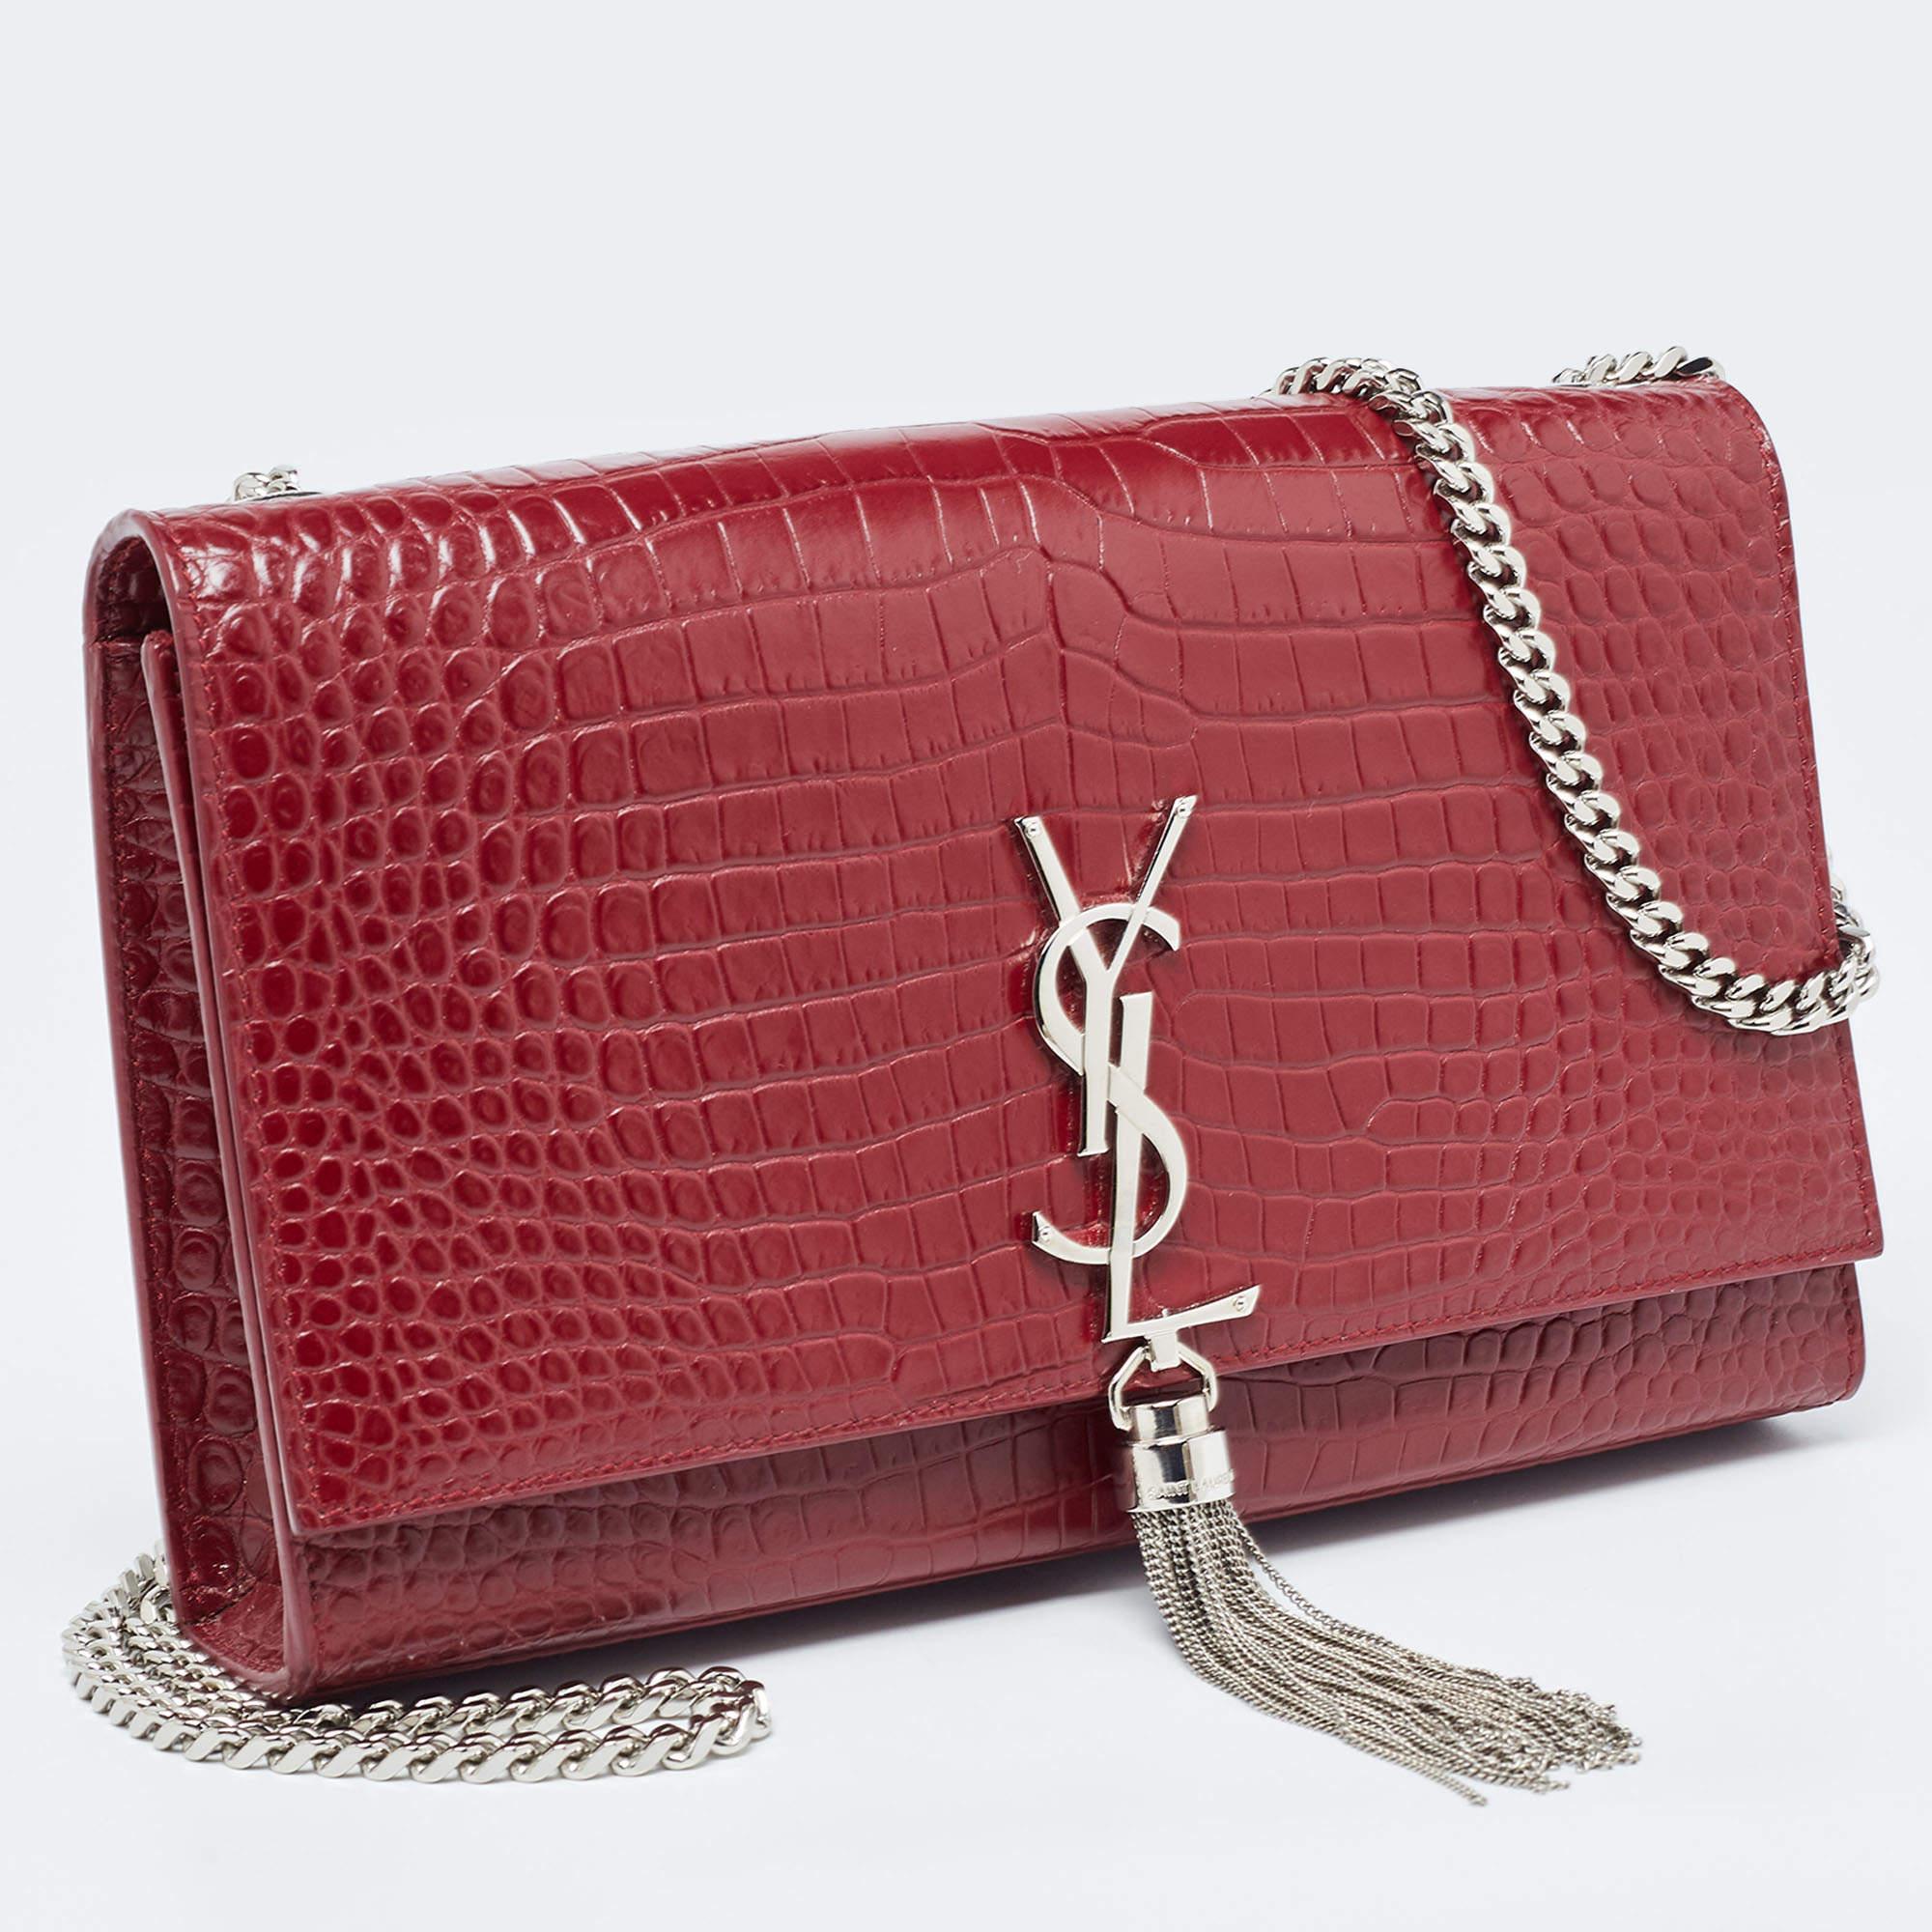 Saint Laurent Red Croc Embossed Leather Medium Kate Tassel Bag In Good Condition For Sale In Dubai, Al Qouz 2